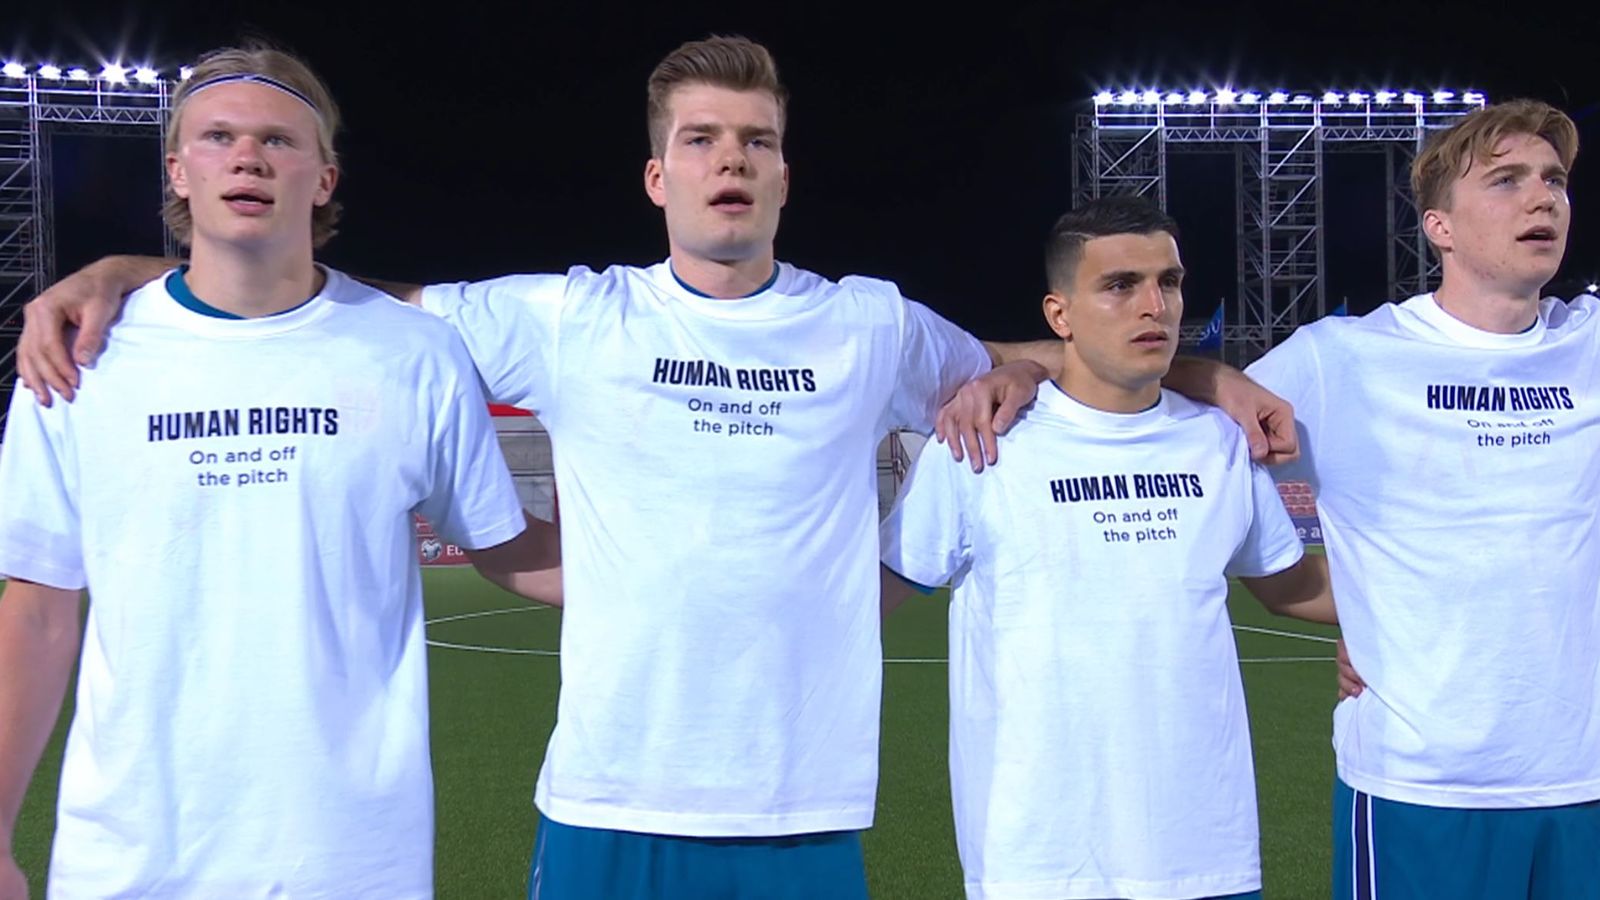 Qatar 2022-VM: Norske spillere protesterer for å gi uttrykk for bekymring over vertskapets menneskerettighetsrekord |  Fotballnyheter